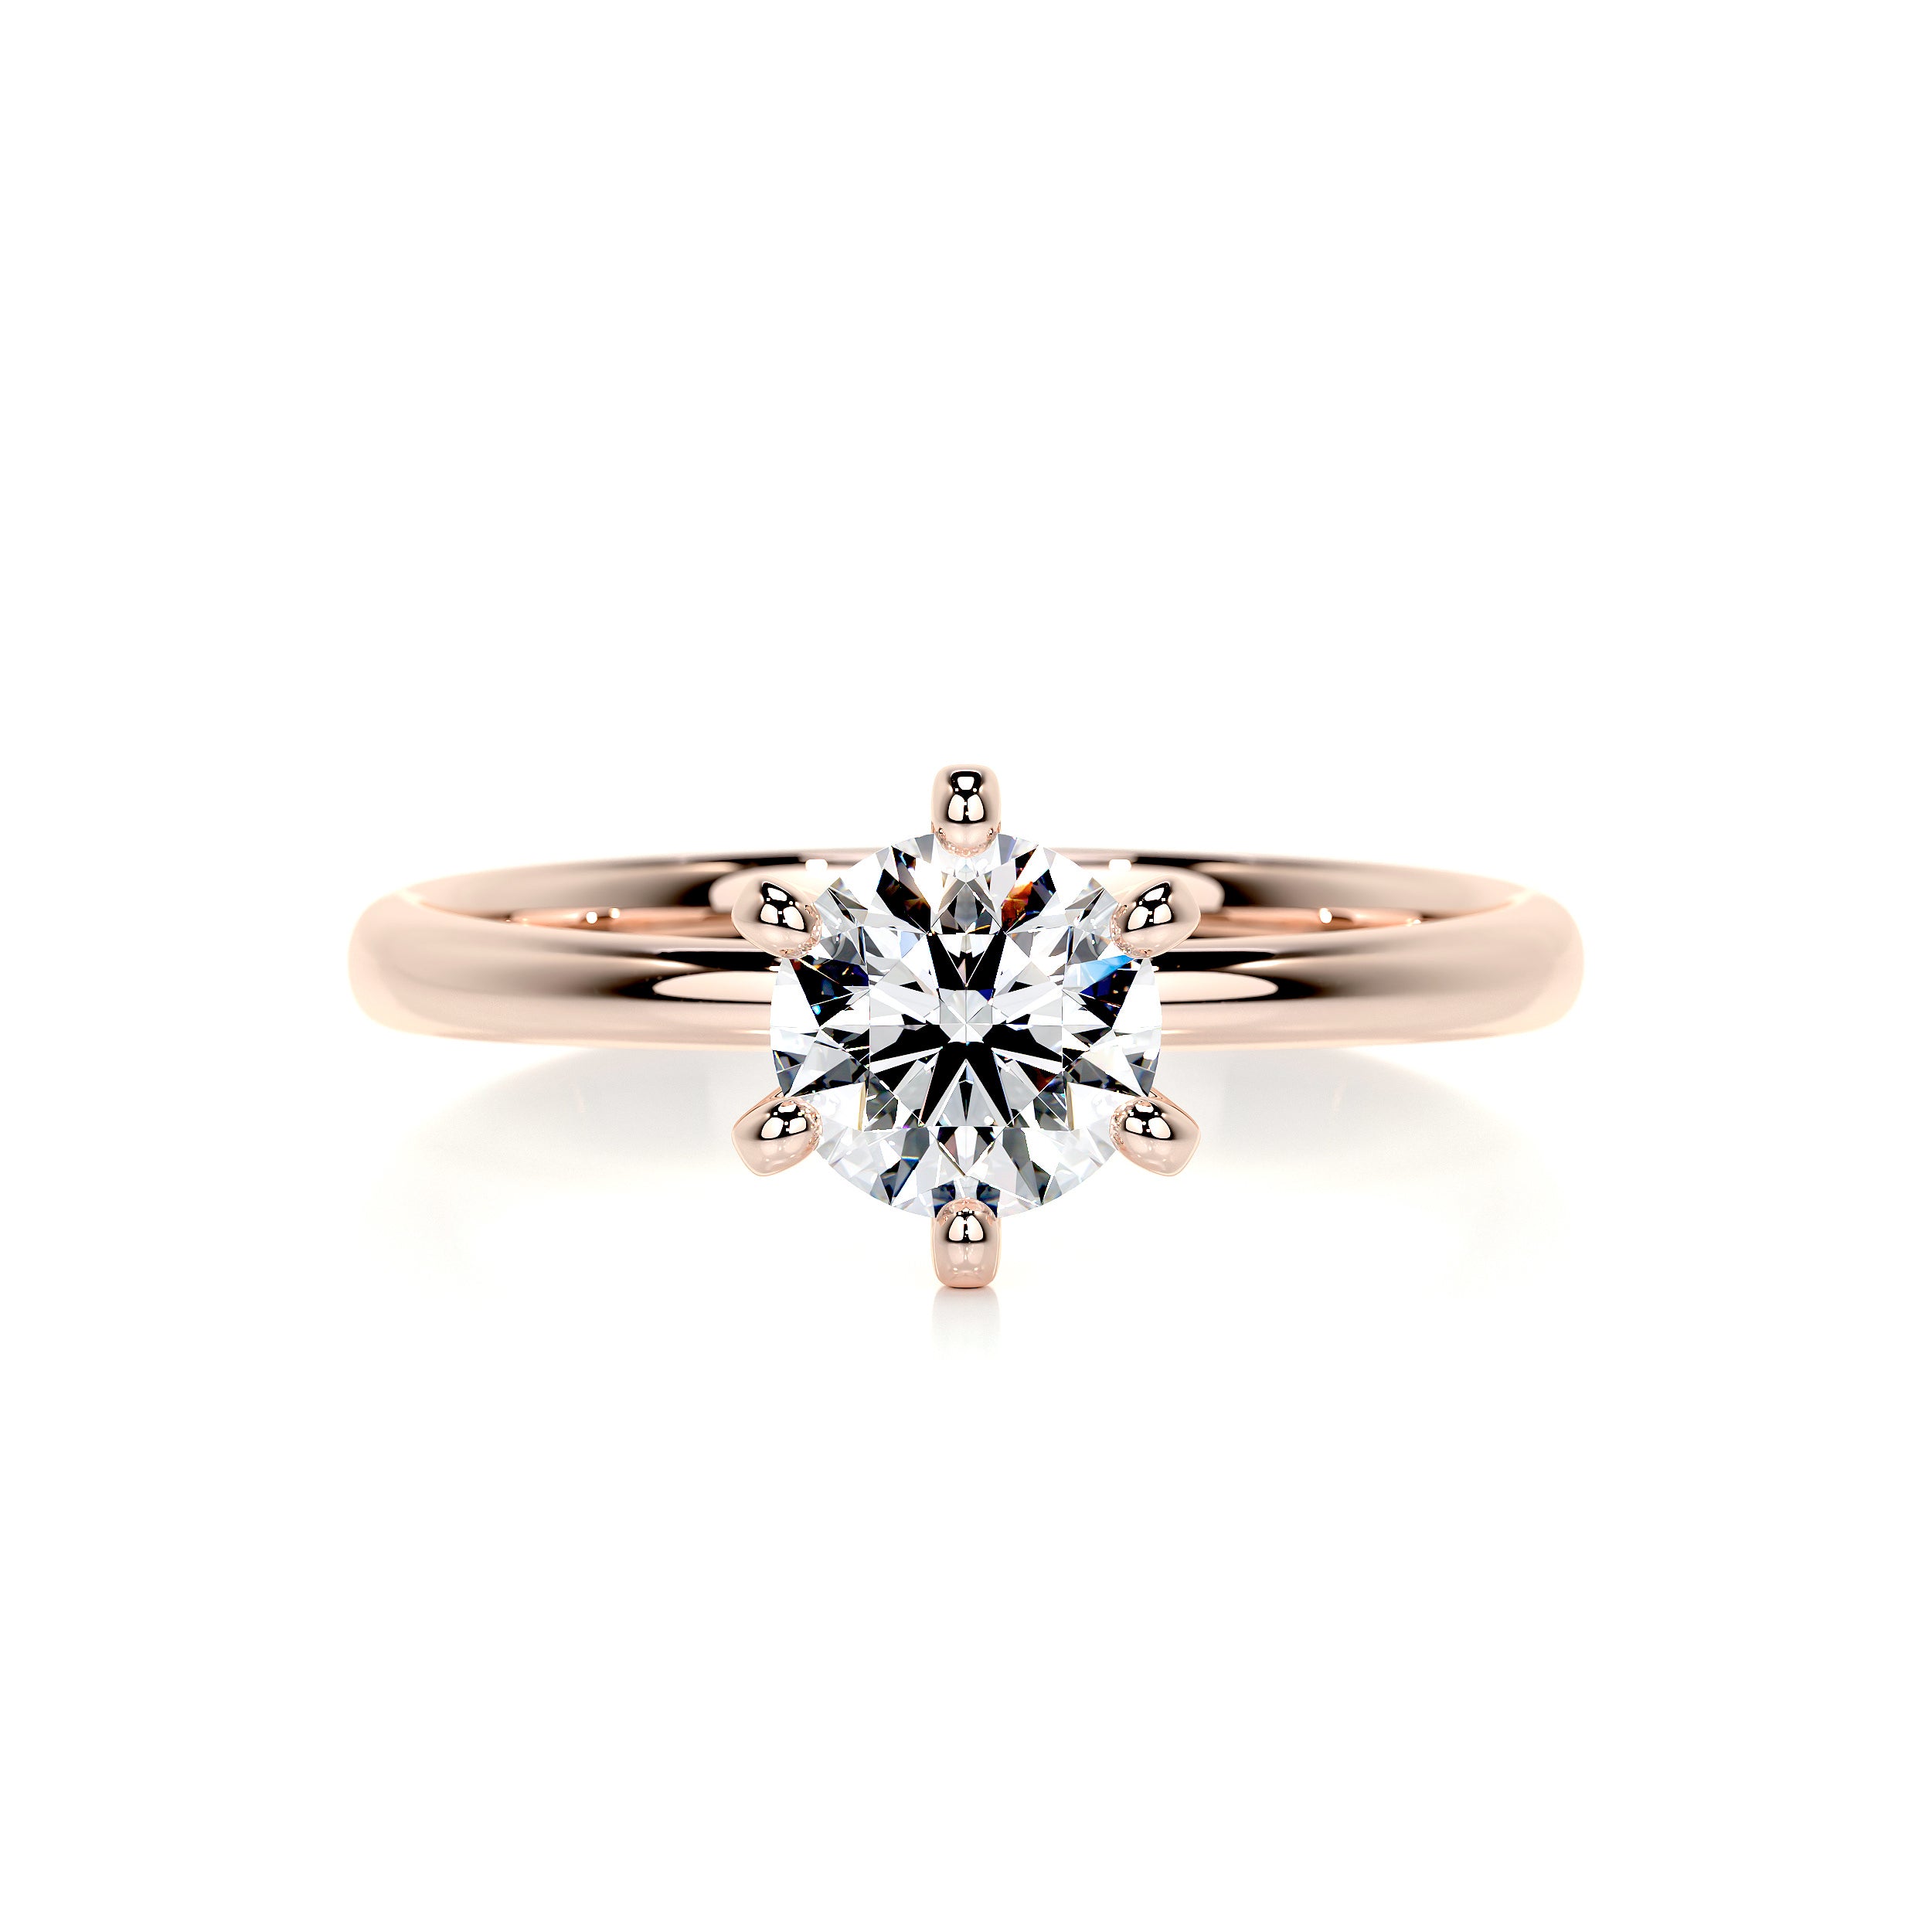 Samantha Diamond Engagement Ring   (0.75 Carat) -14K Rose Gold